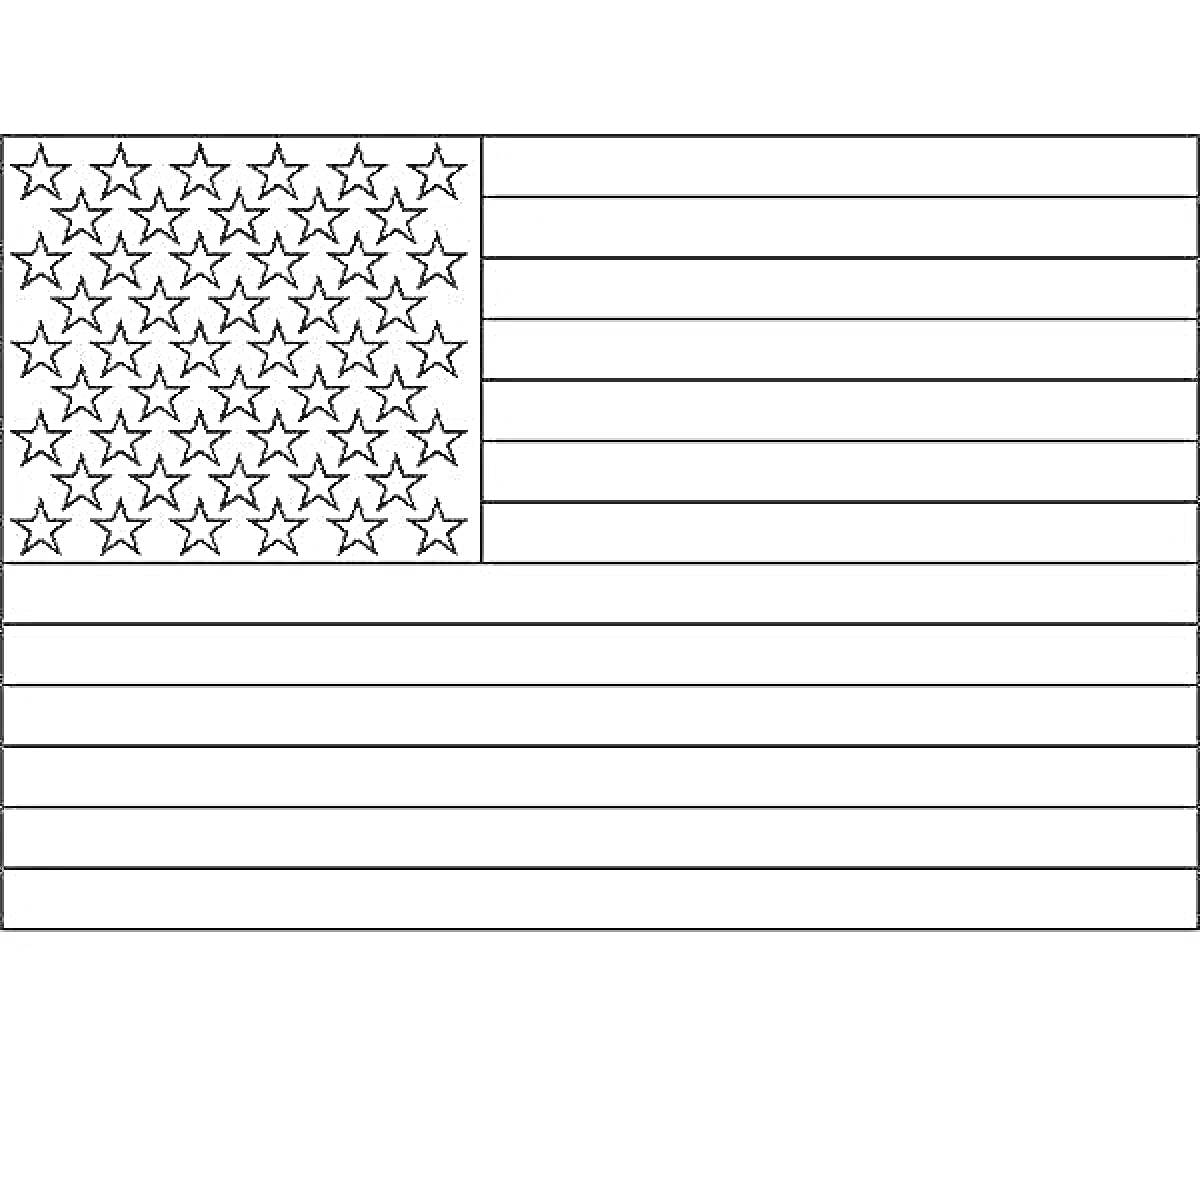 Раскраска раскраска флага США с пятьюдесятью звездами и тринадцатью полосами